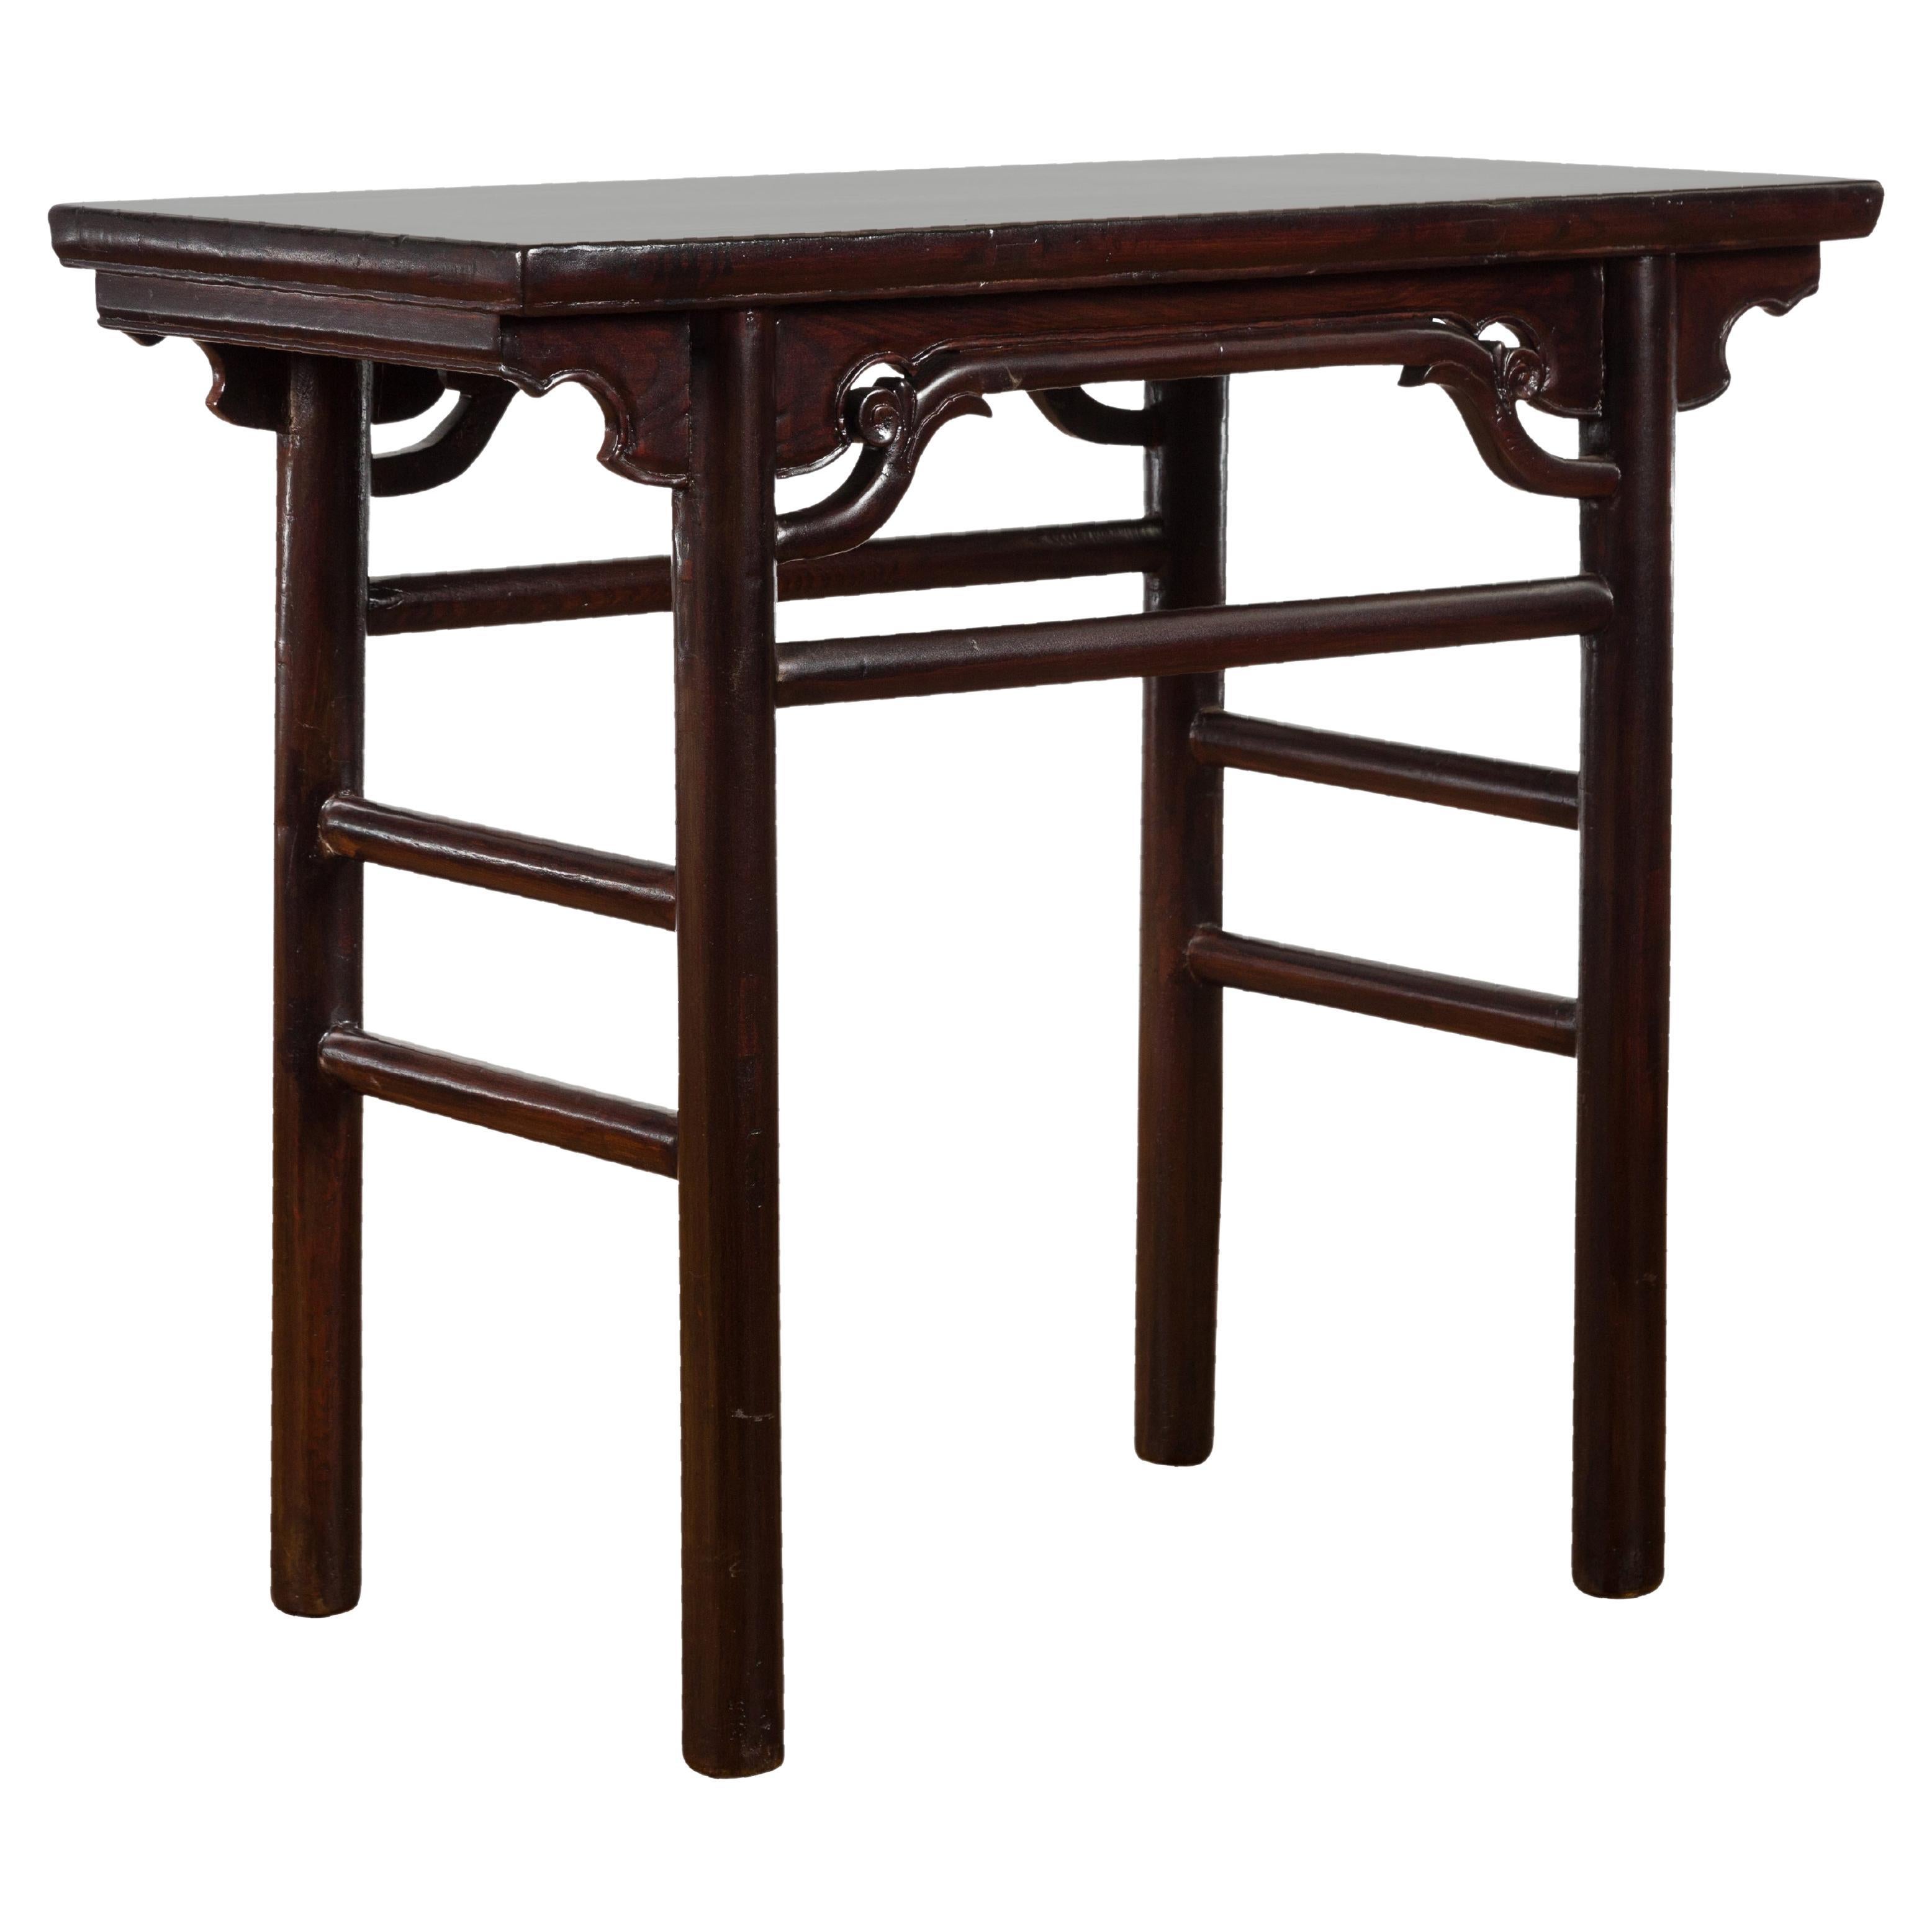 Chinesischer Weintisch aus Yumu-Holz im Ming-Stil der chinesischen Qing-Dynastie mit dunklem Lack